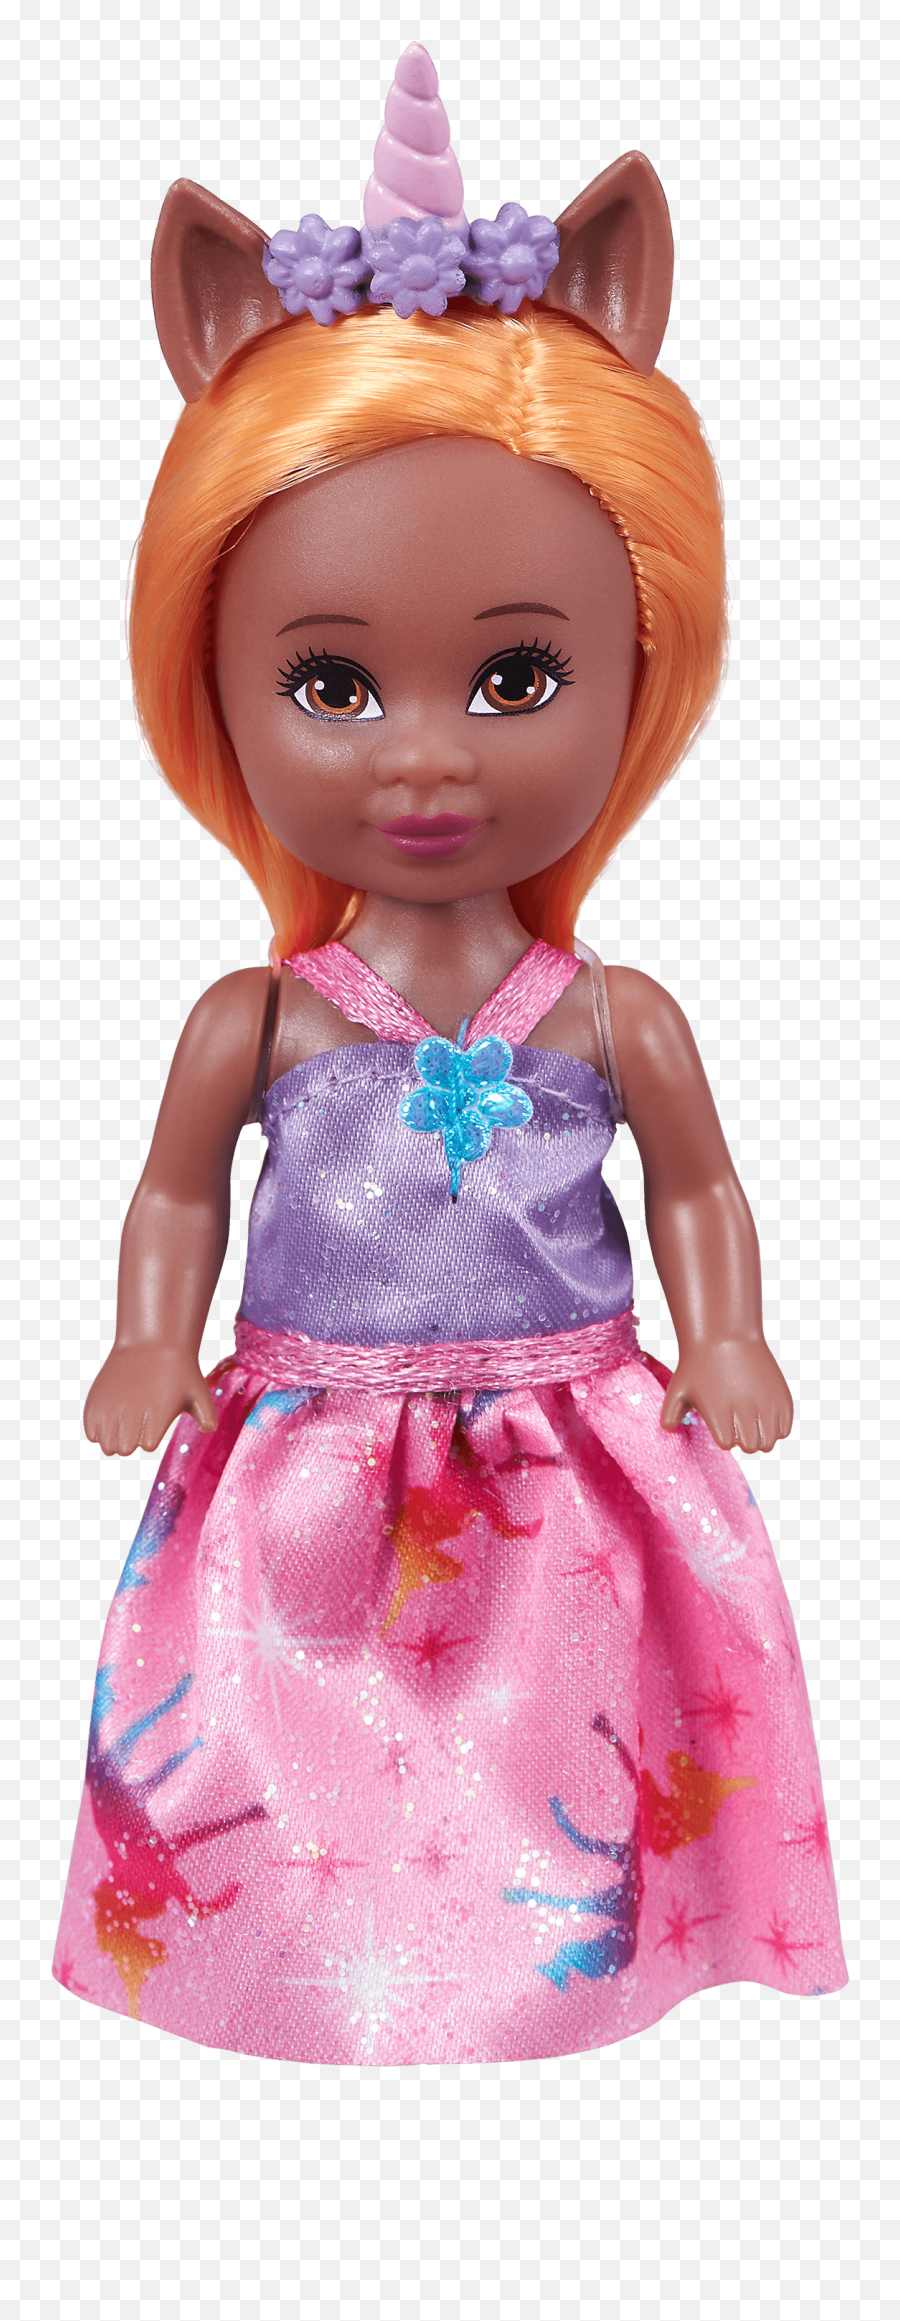 Sparkle Girlz Fancy Doll African American From Walmart In Emoji,Fancy Nancy Png